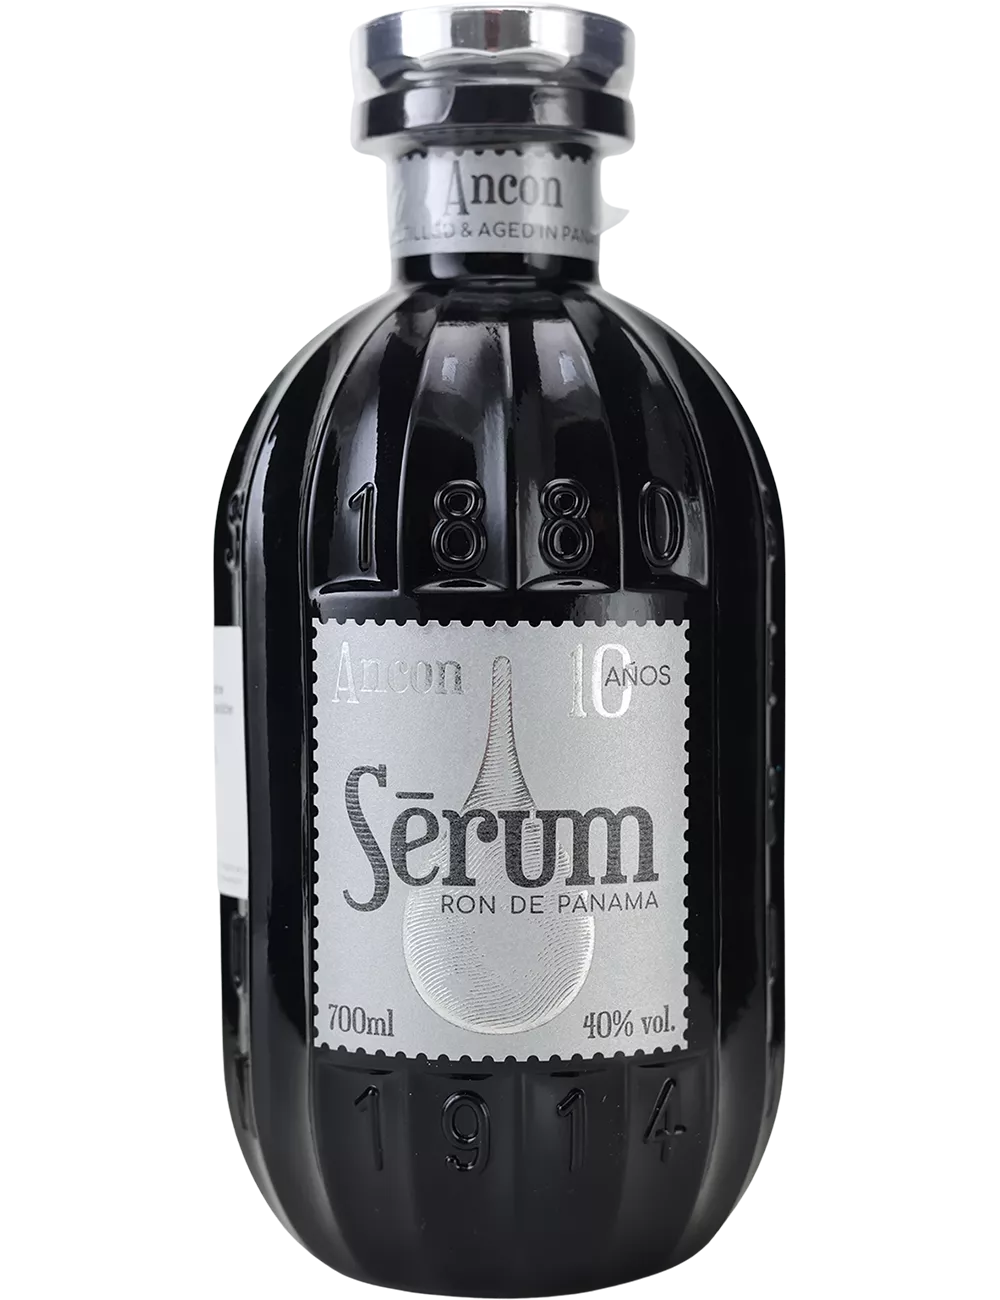 Serum - Ancon - 10 ans - Rhum vieux de mélasse